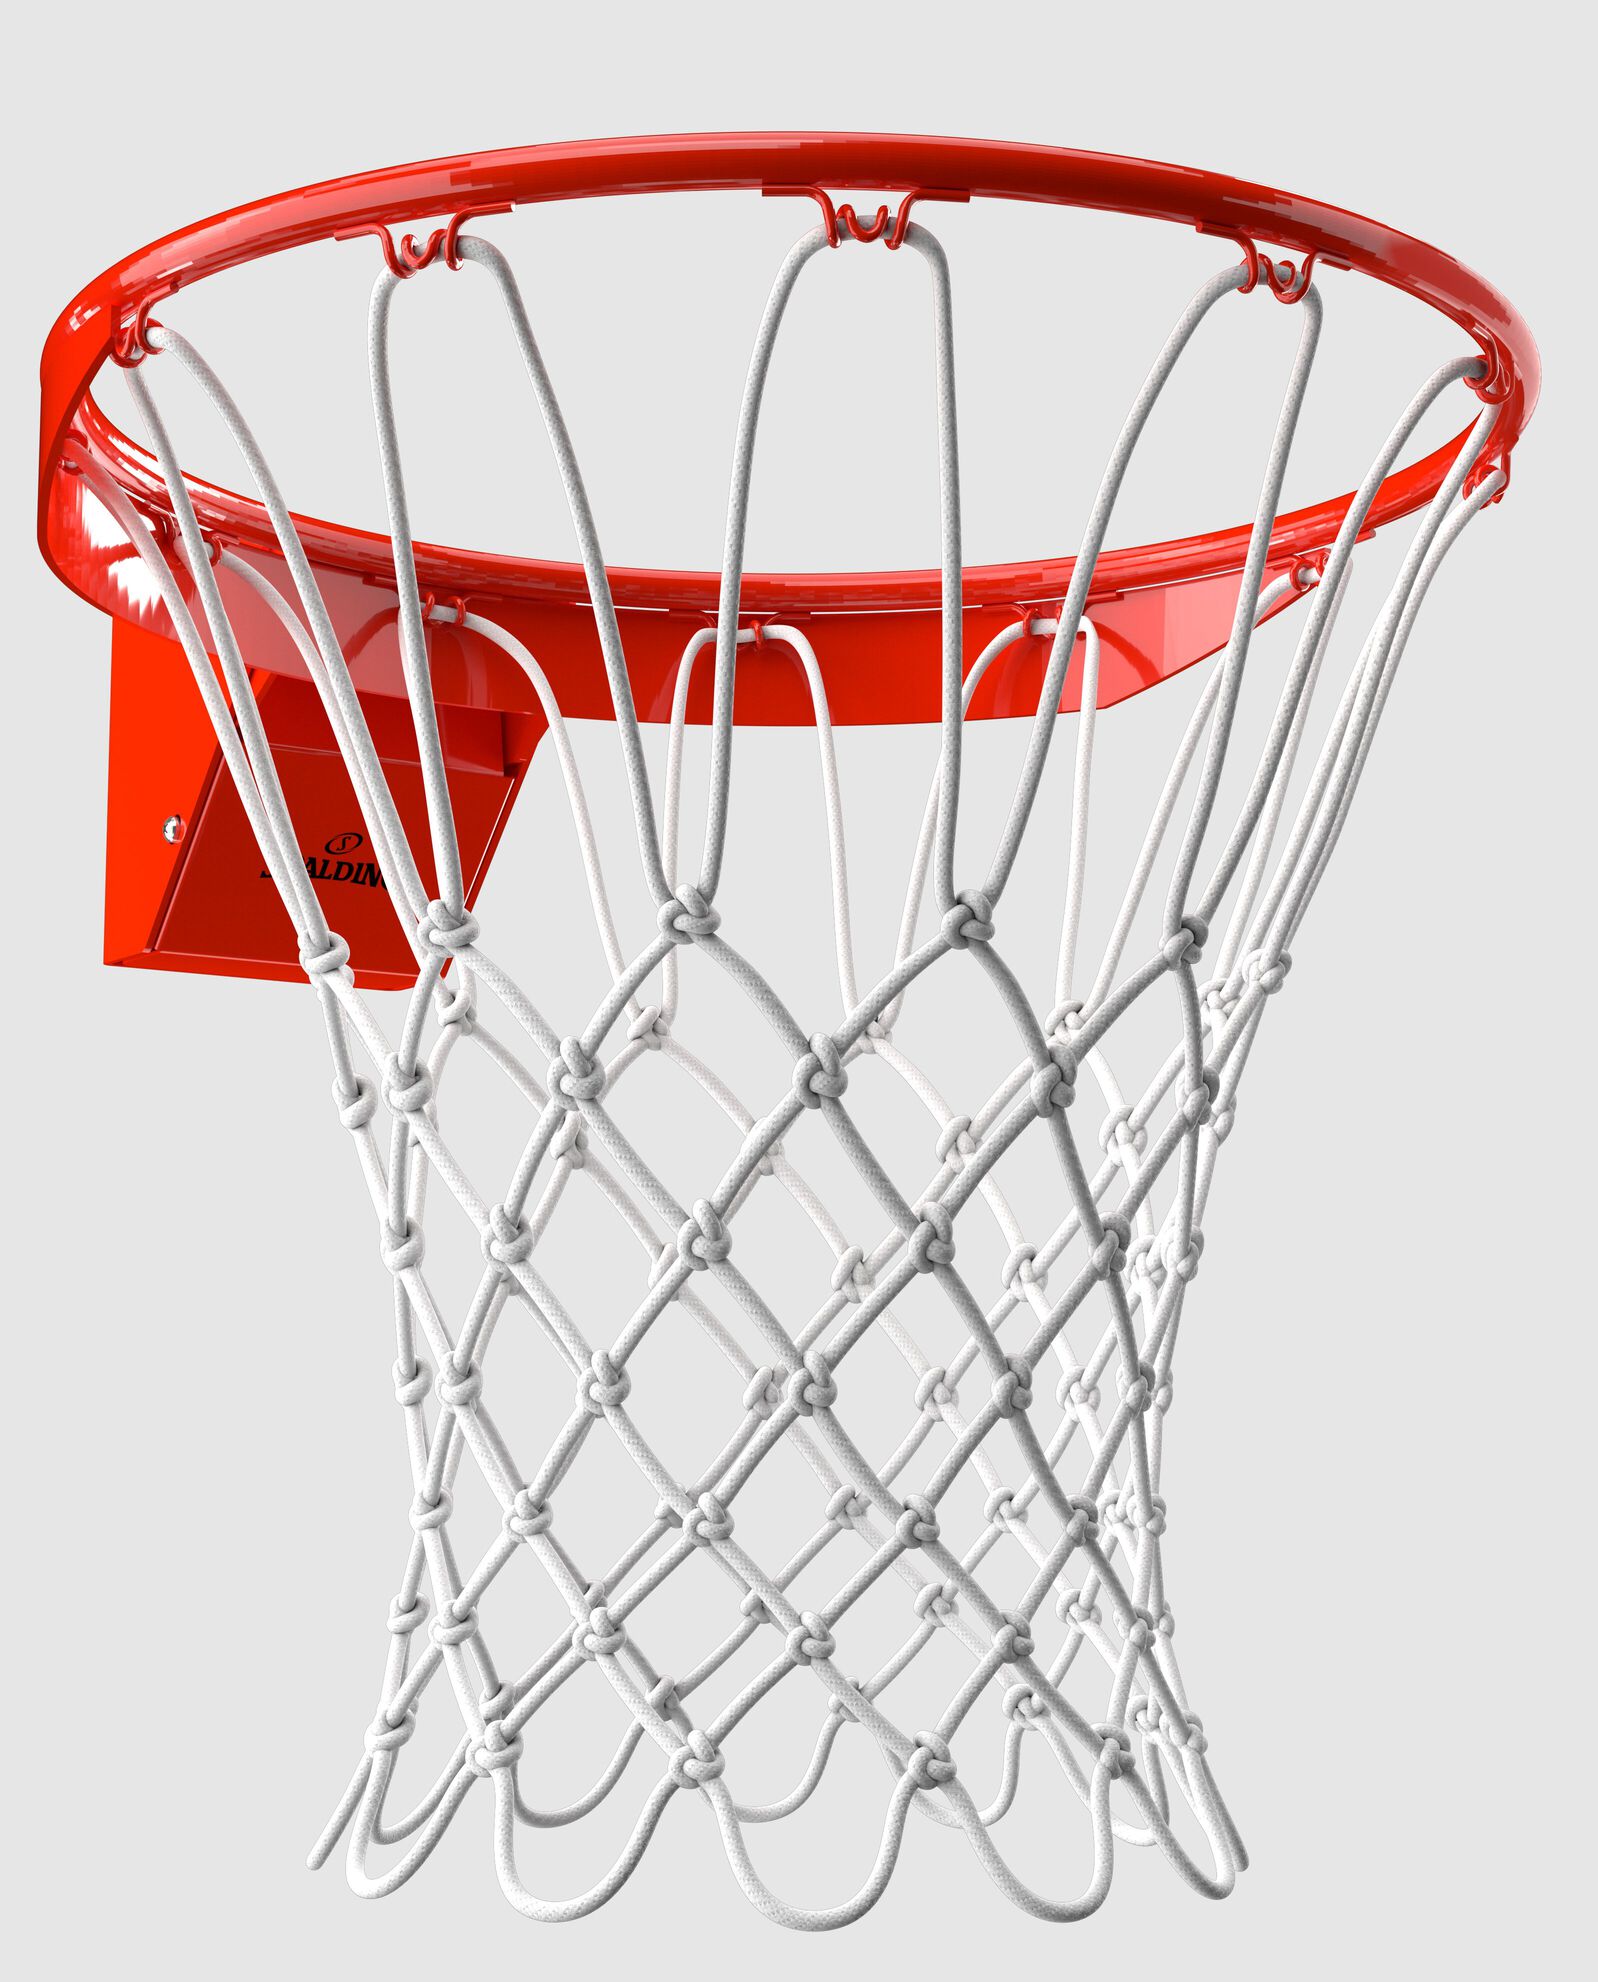 Pro Image™ Basketball Rim orange